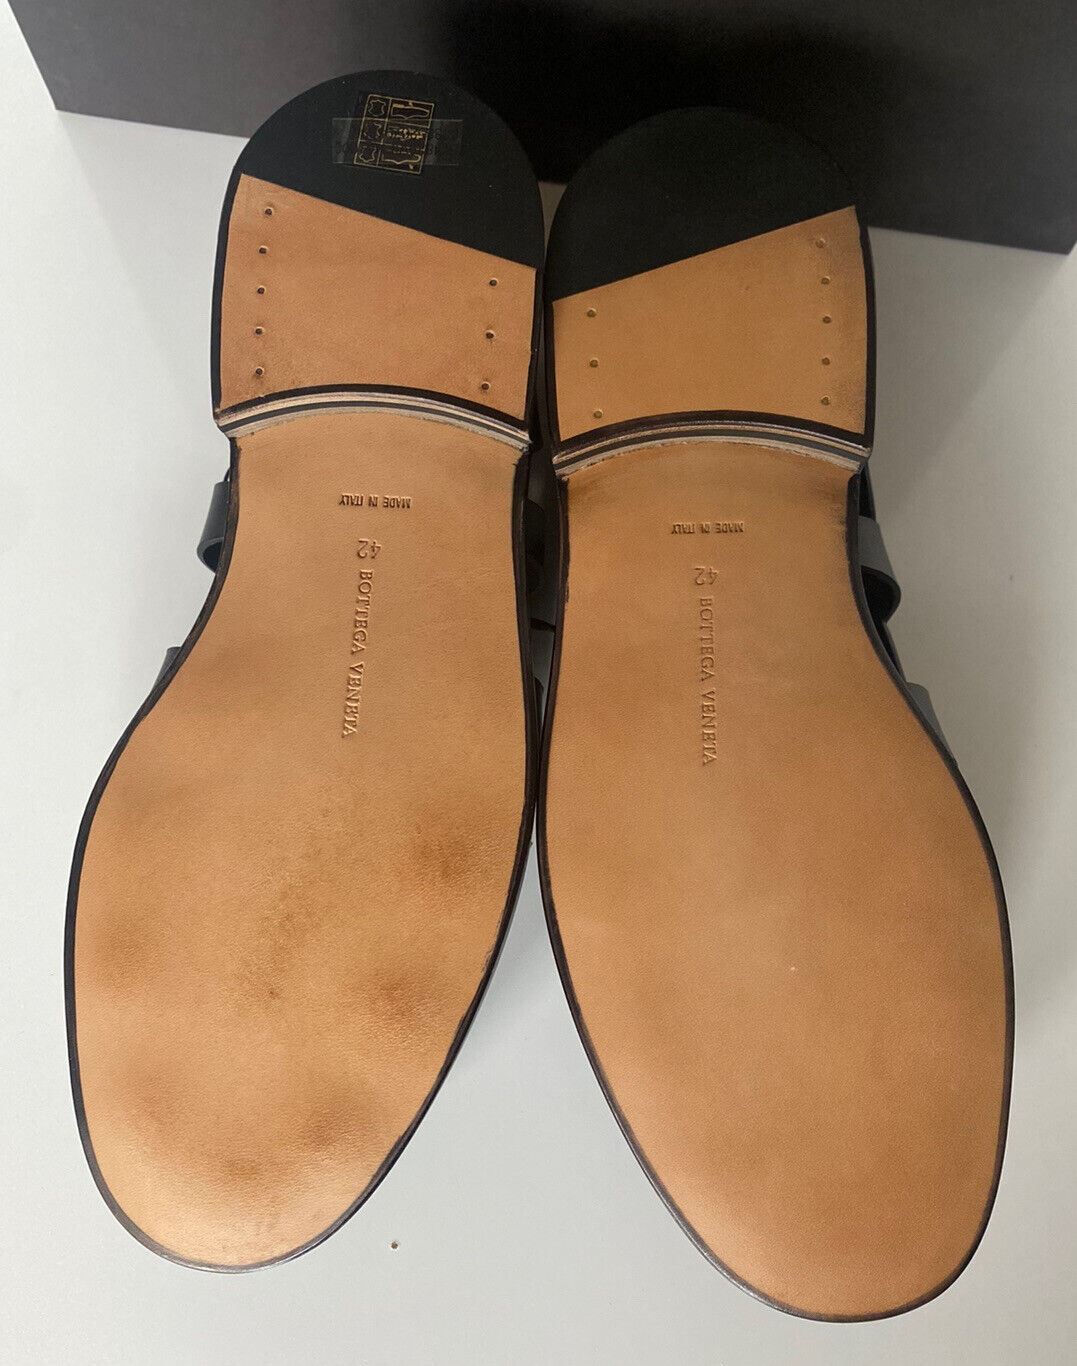 NIB $890 Bottega Veneta Men's Derby Leather Shoes Cut-out Details 9 US 574829